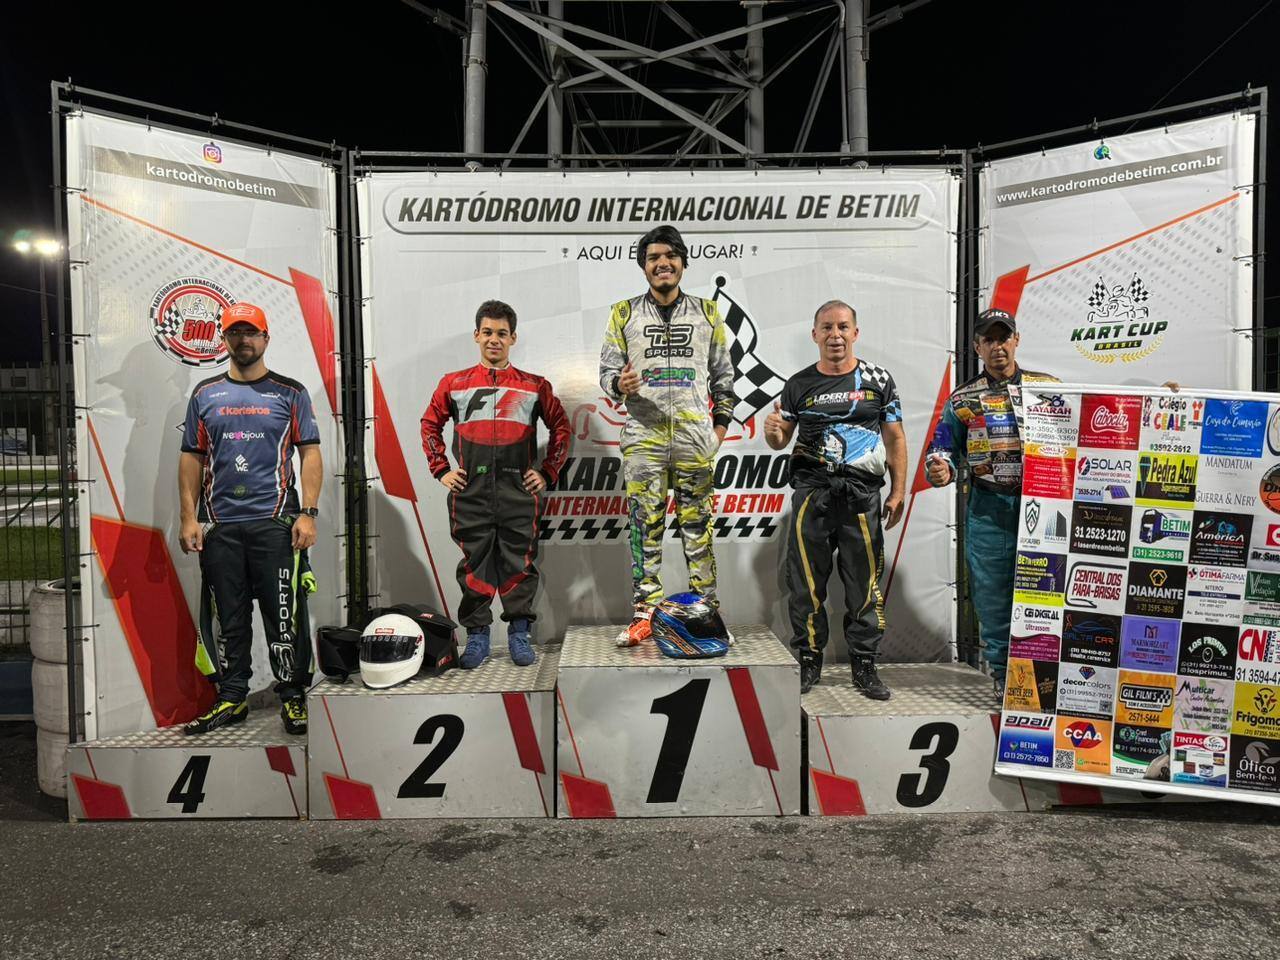 Christian Silveira  venceu a corrida na categoria Super Kart, seguido de Lucas Starling, Rodrigo Rotheia, Rodrigo Dourado e Brunno Machado